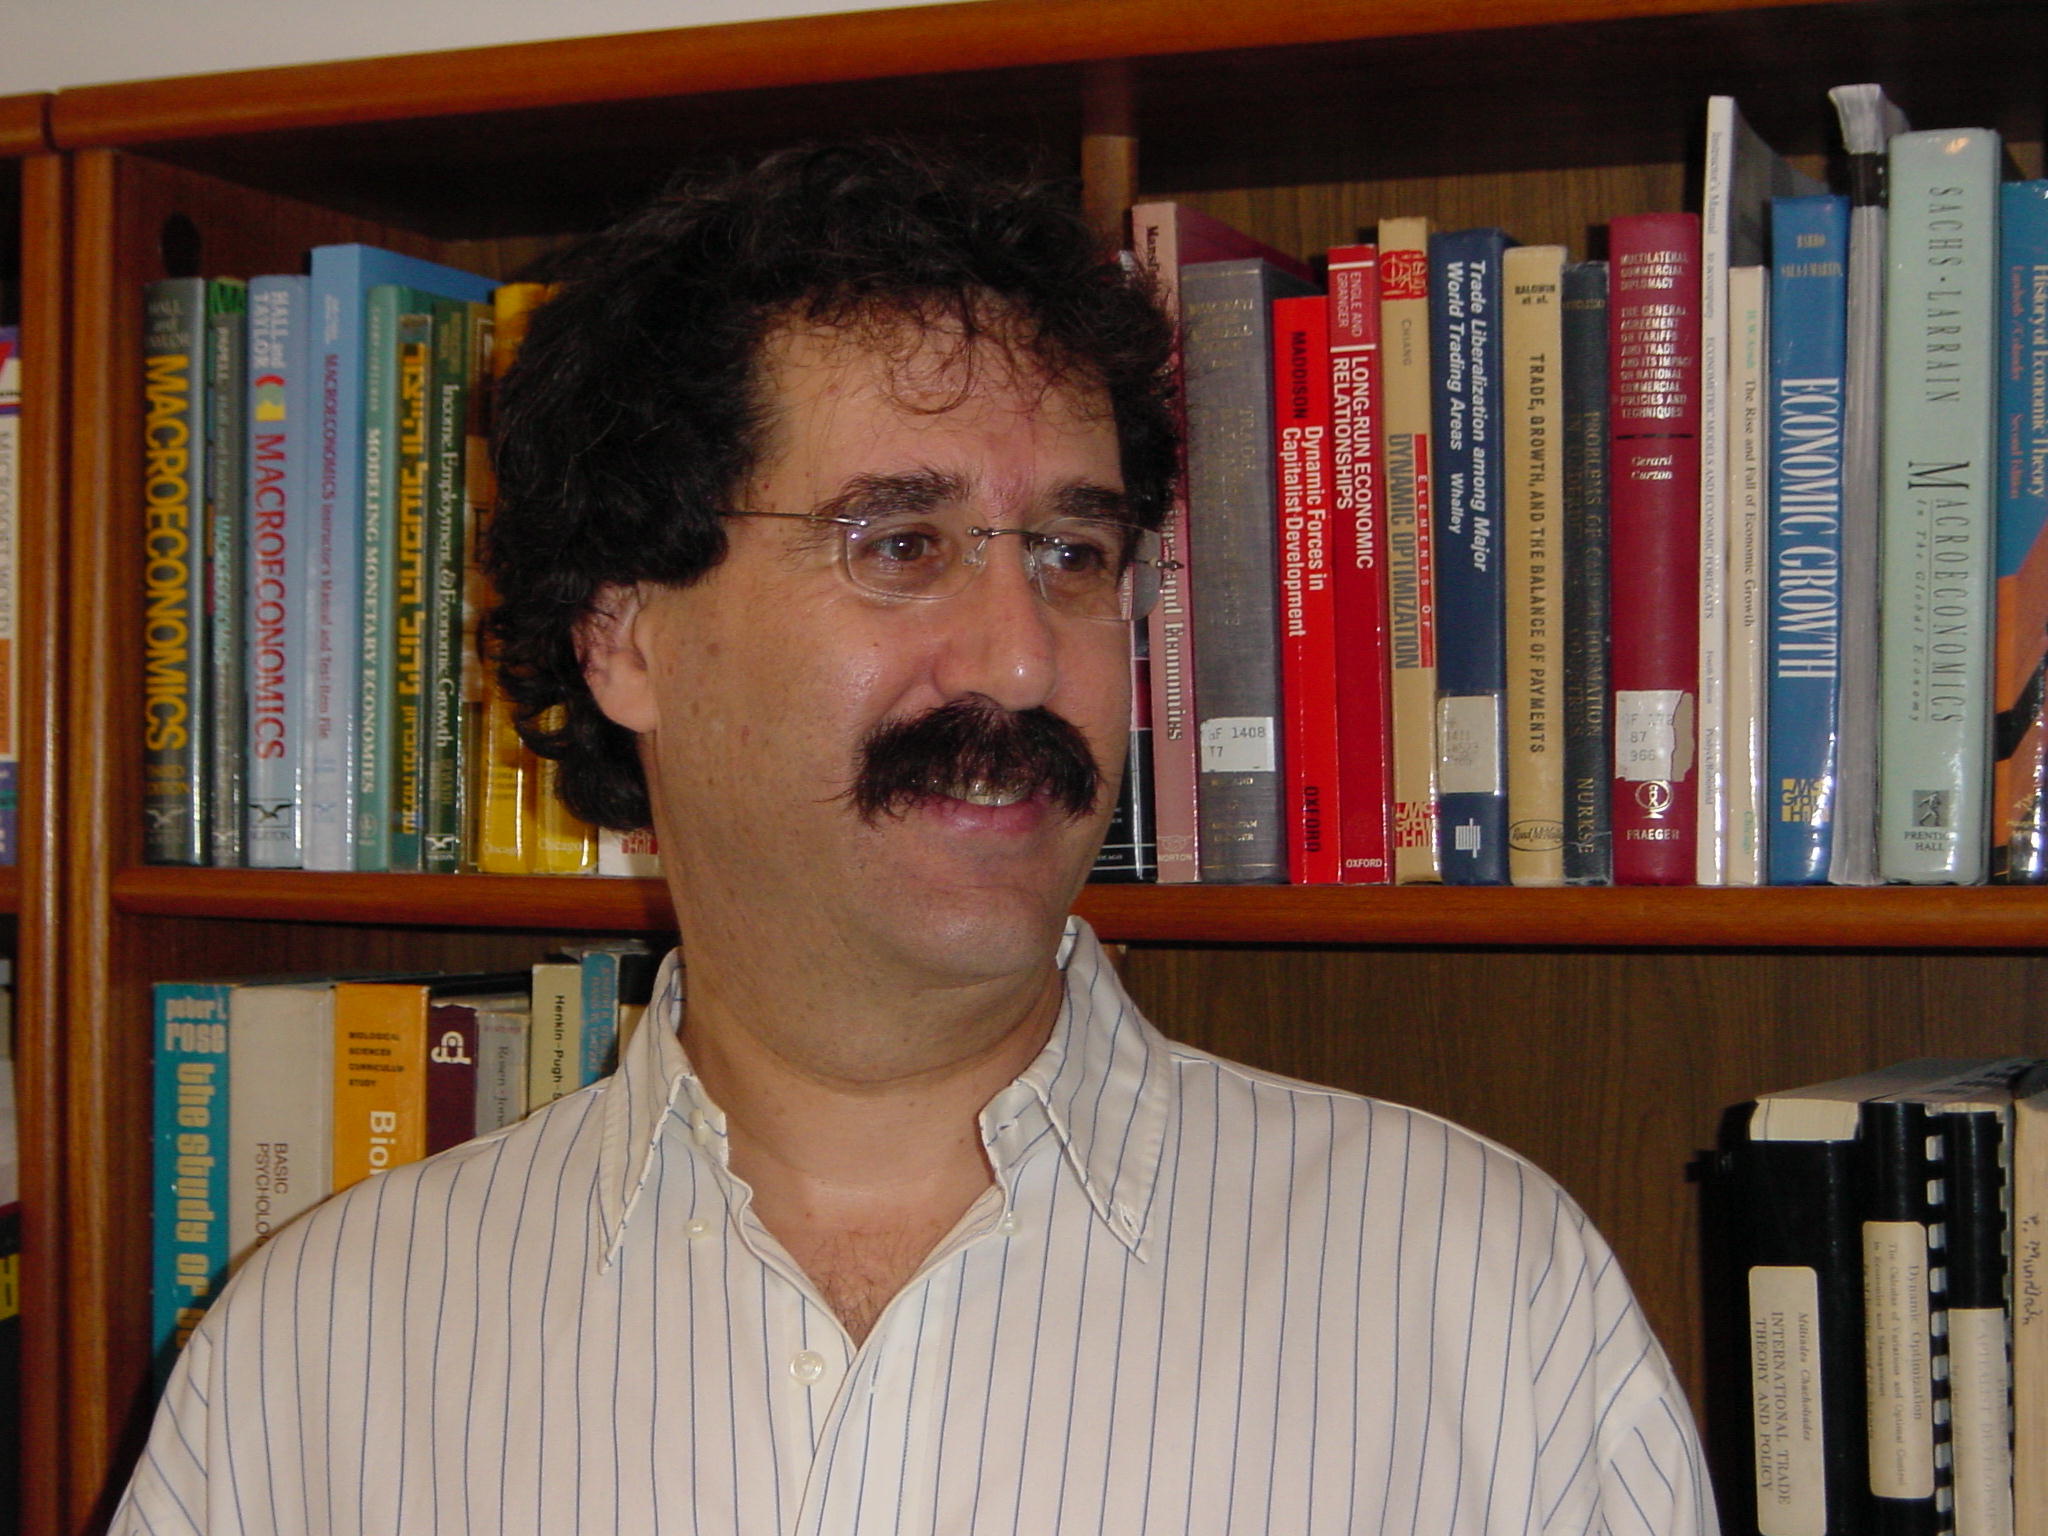 ד"ר דן בן-דוד, המחלקה למדיניות ציבורית, אוניברסיטת תל-אביב, ומנכ"ל מרכז טאוב